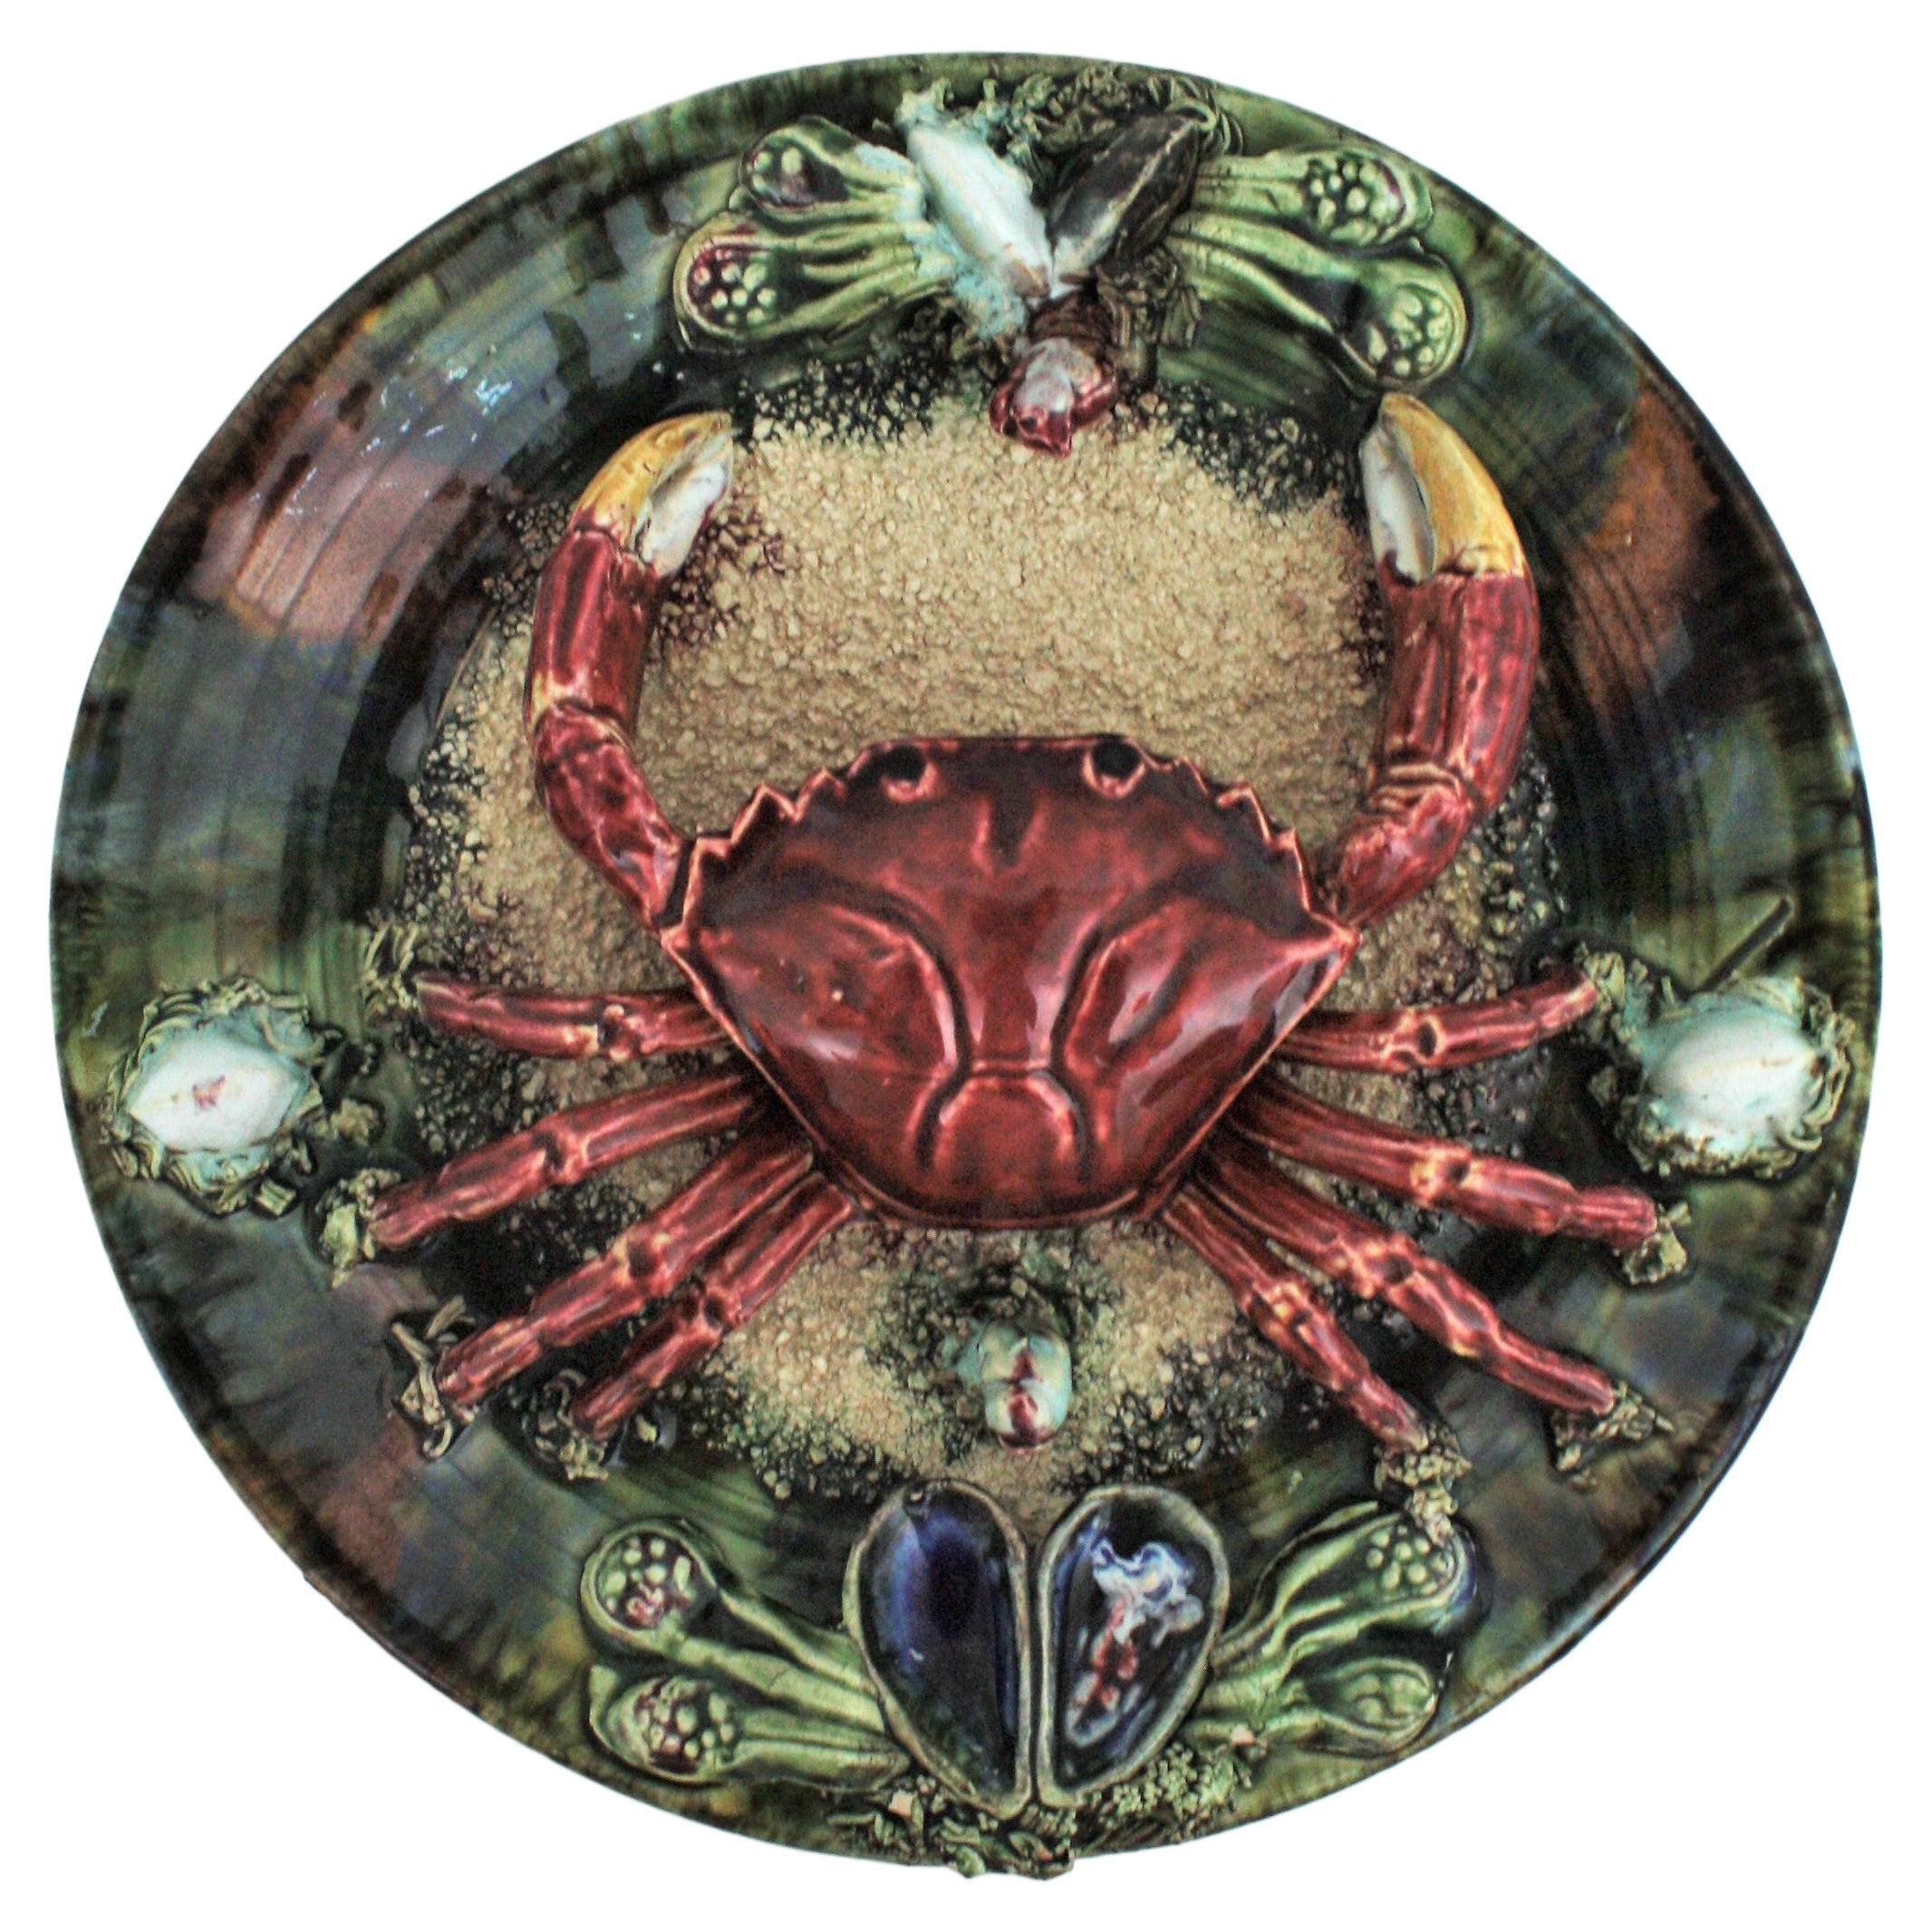 Trompe L' Oeil Crab Decorative Wall Plate in Majolica Ceramic